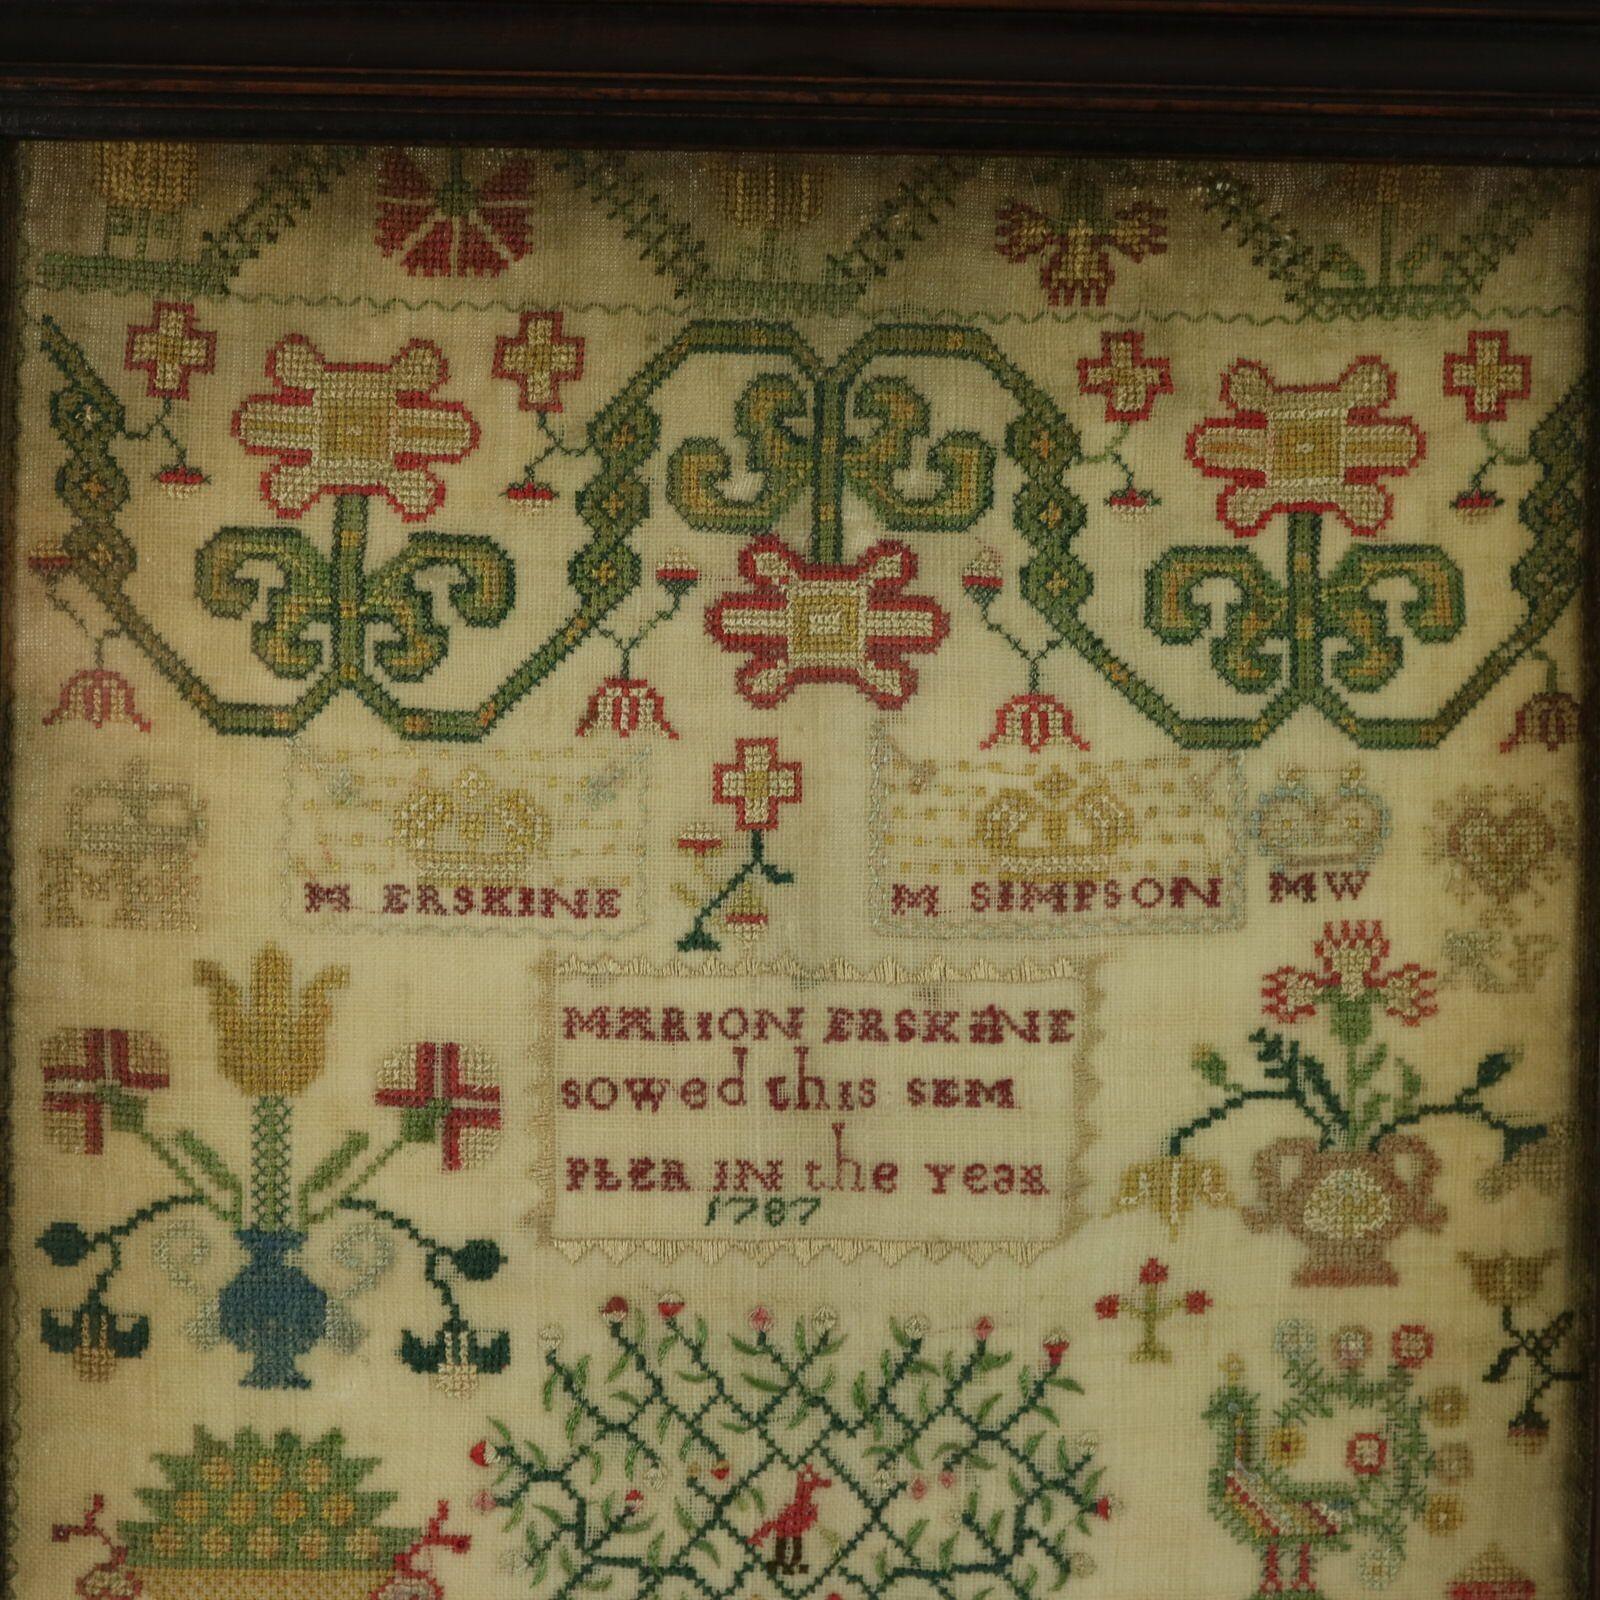 Georgisches Mustertuch, 1787, von Marion Erskine. Das Mustertuch ist mit Seidenfäden auf einem Leinengrund gearbeitet, hauptsächlich im Kreuzstich. Mäandernde florale Bordüre. Farben grün, blau, rot, gold, schwarz, dunkelbraun und silber.